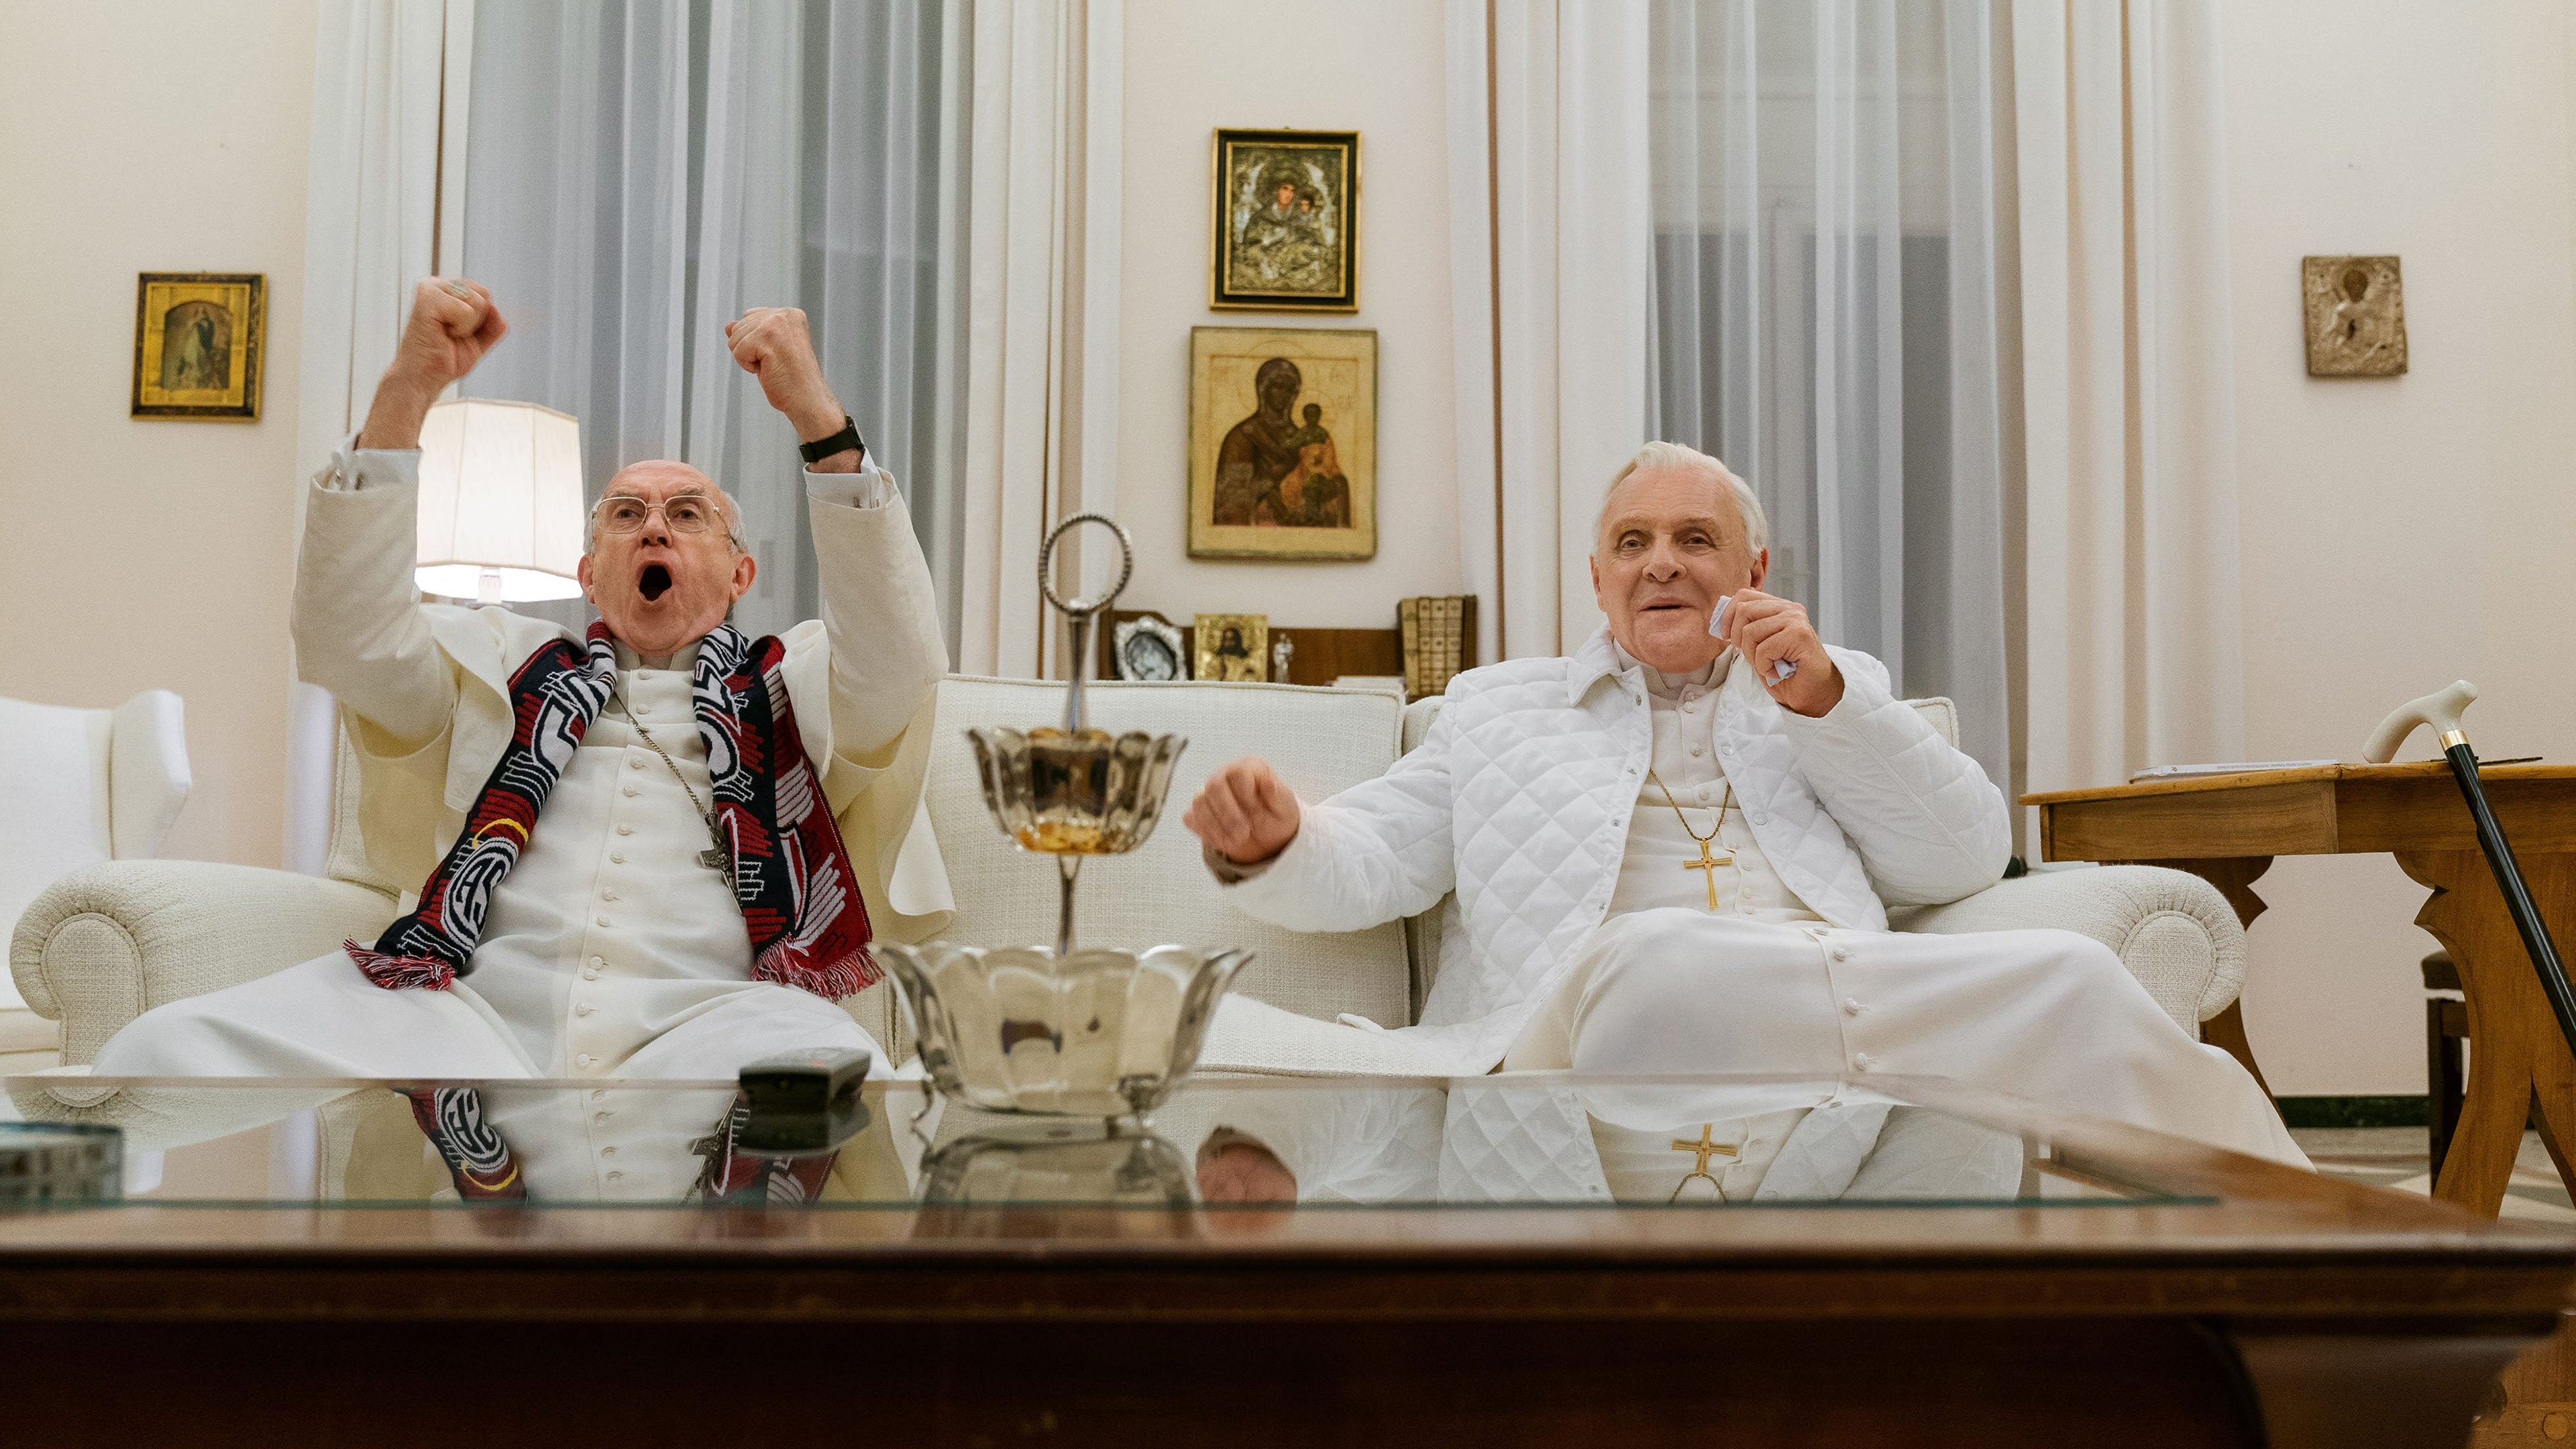 Hai Vị Giáo Hoàng - The Two Popes